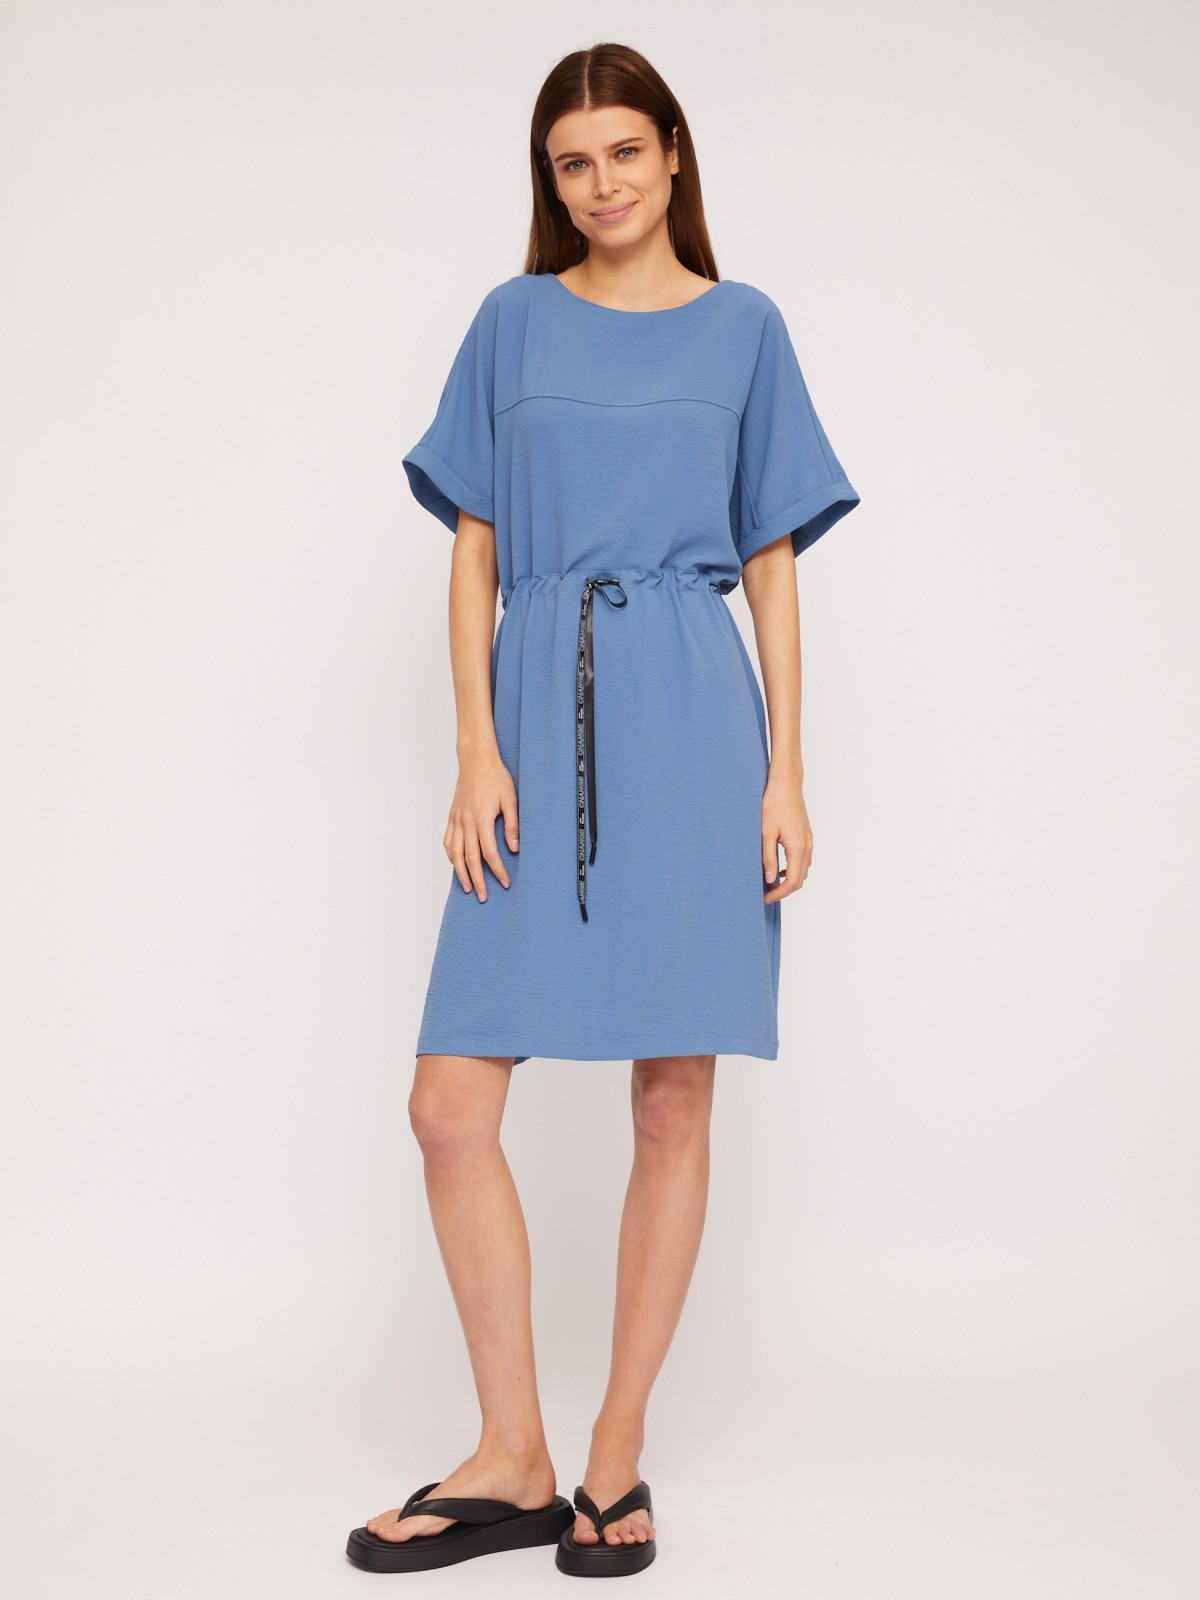 Платье-футболка мини с кулиской на талии zolla 02423824Y773, цвет голубой, размер M - фото 2